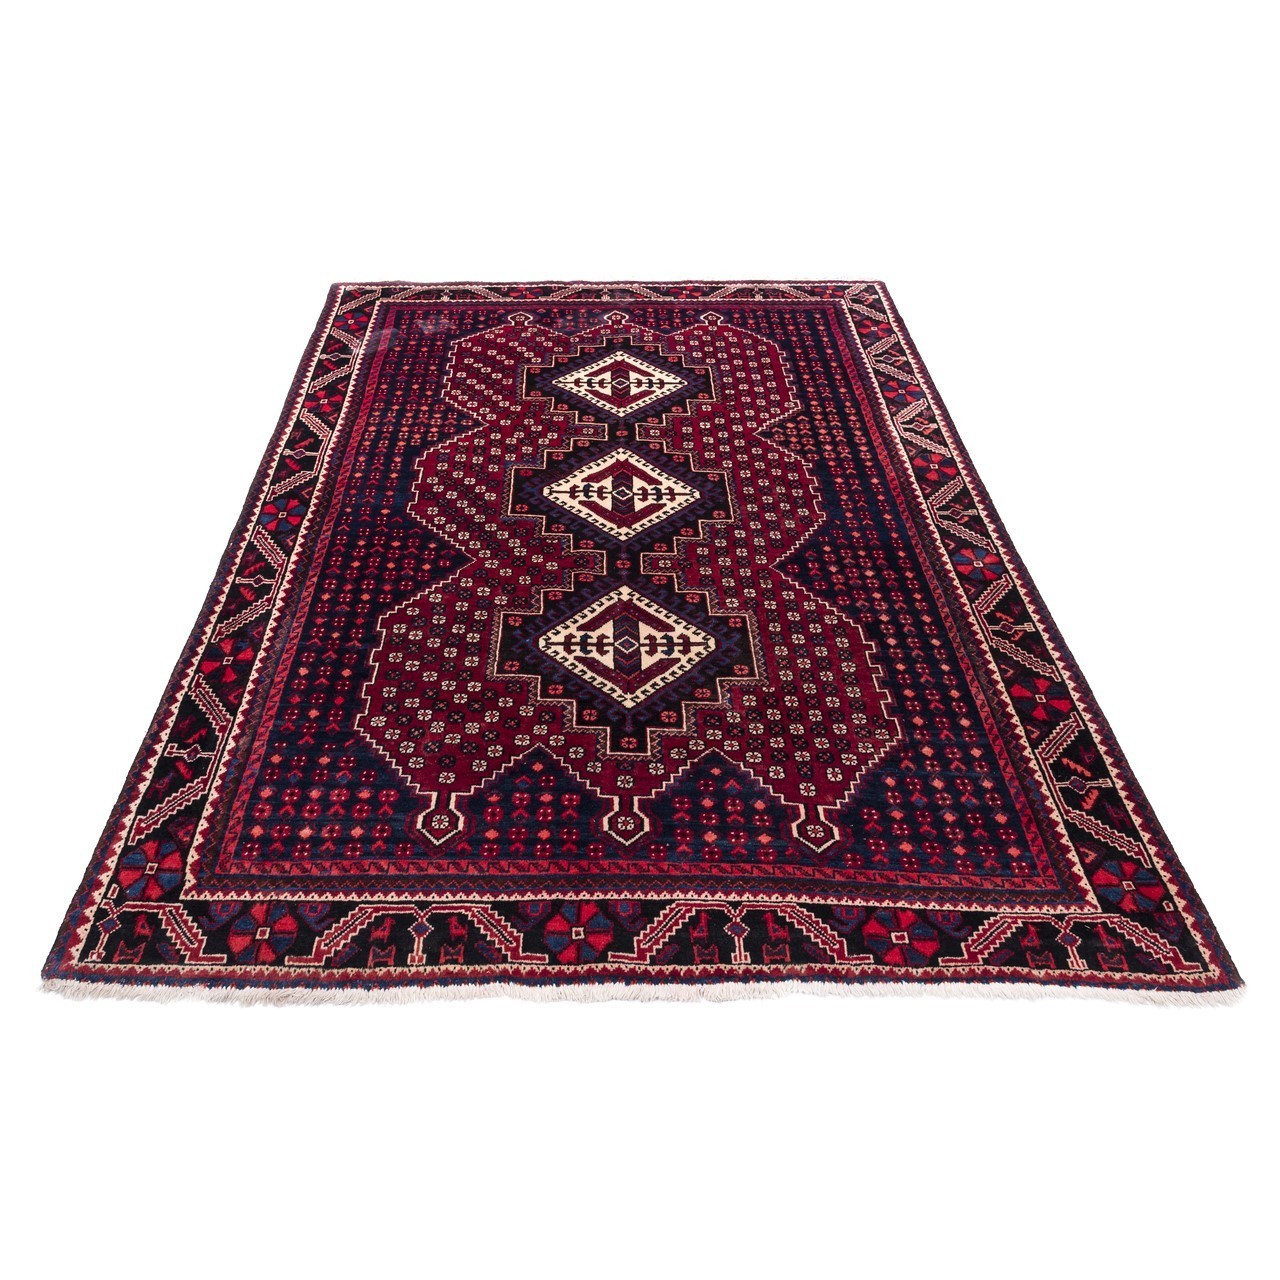 handgeknüpfter persischer Teppich. Ziffer 102189